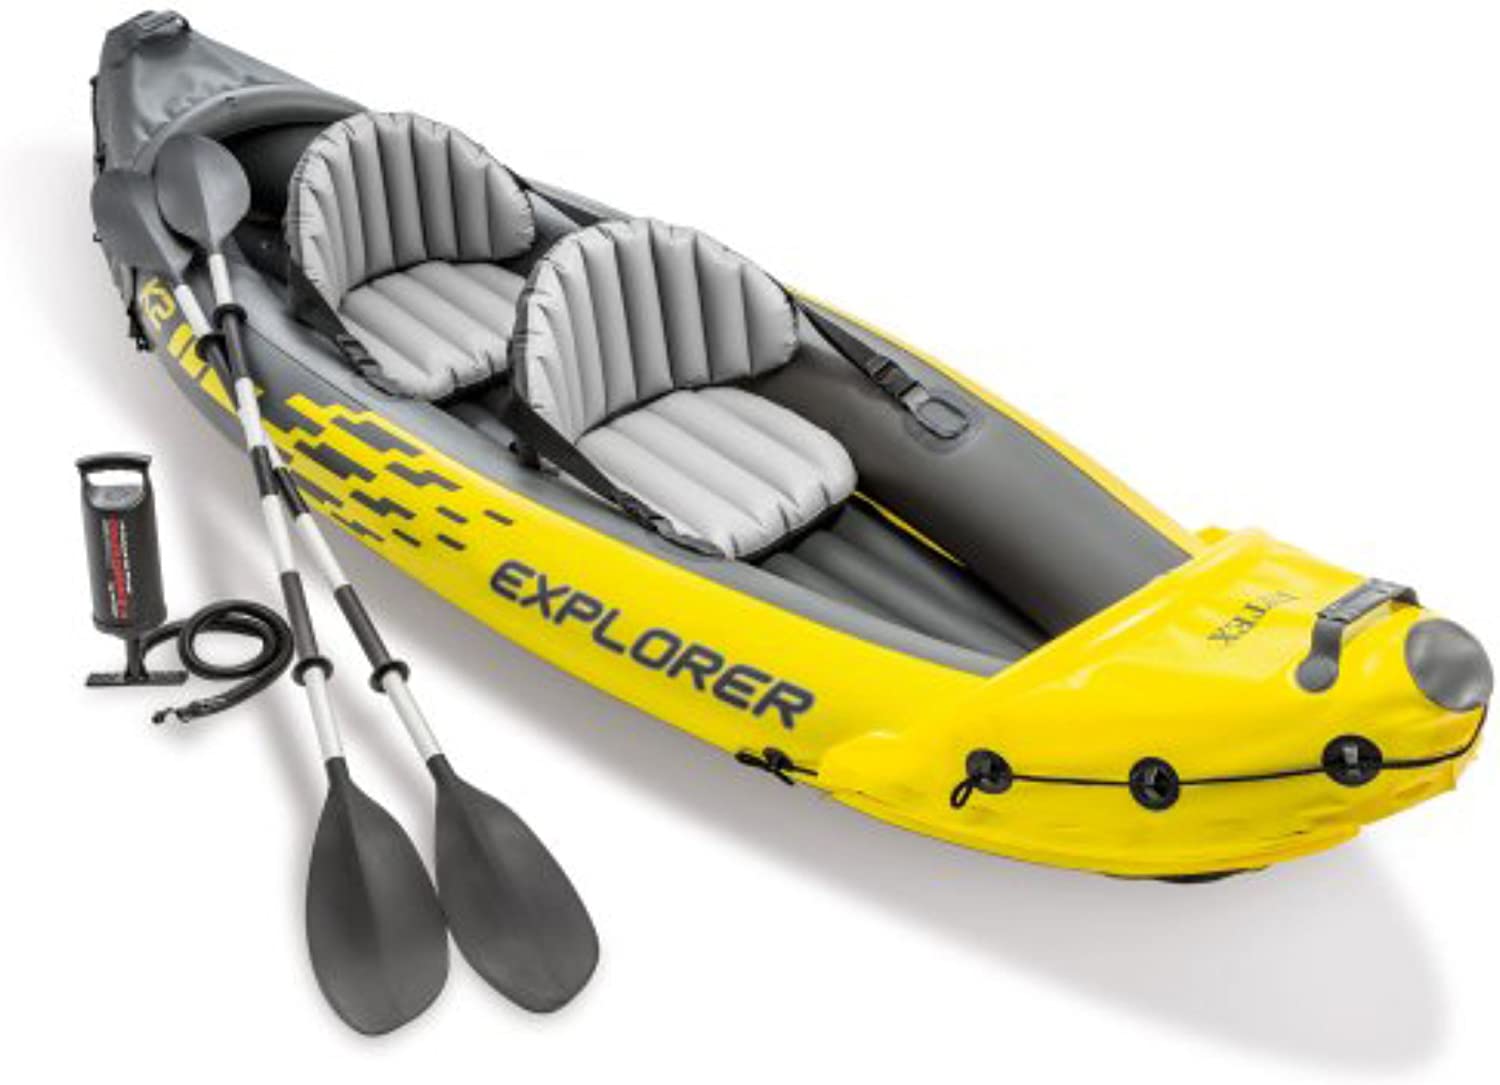 Explorer K2 Kayak, 2-Person Inflatable Kayak Set with Aluminum Oars, Manual and Electric Pumps√É¬¢√¢‚Äö¬¨√Ç¬¶